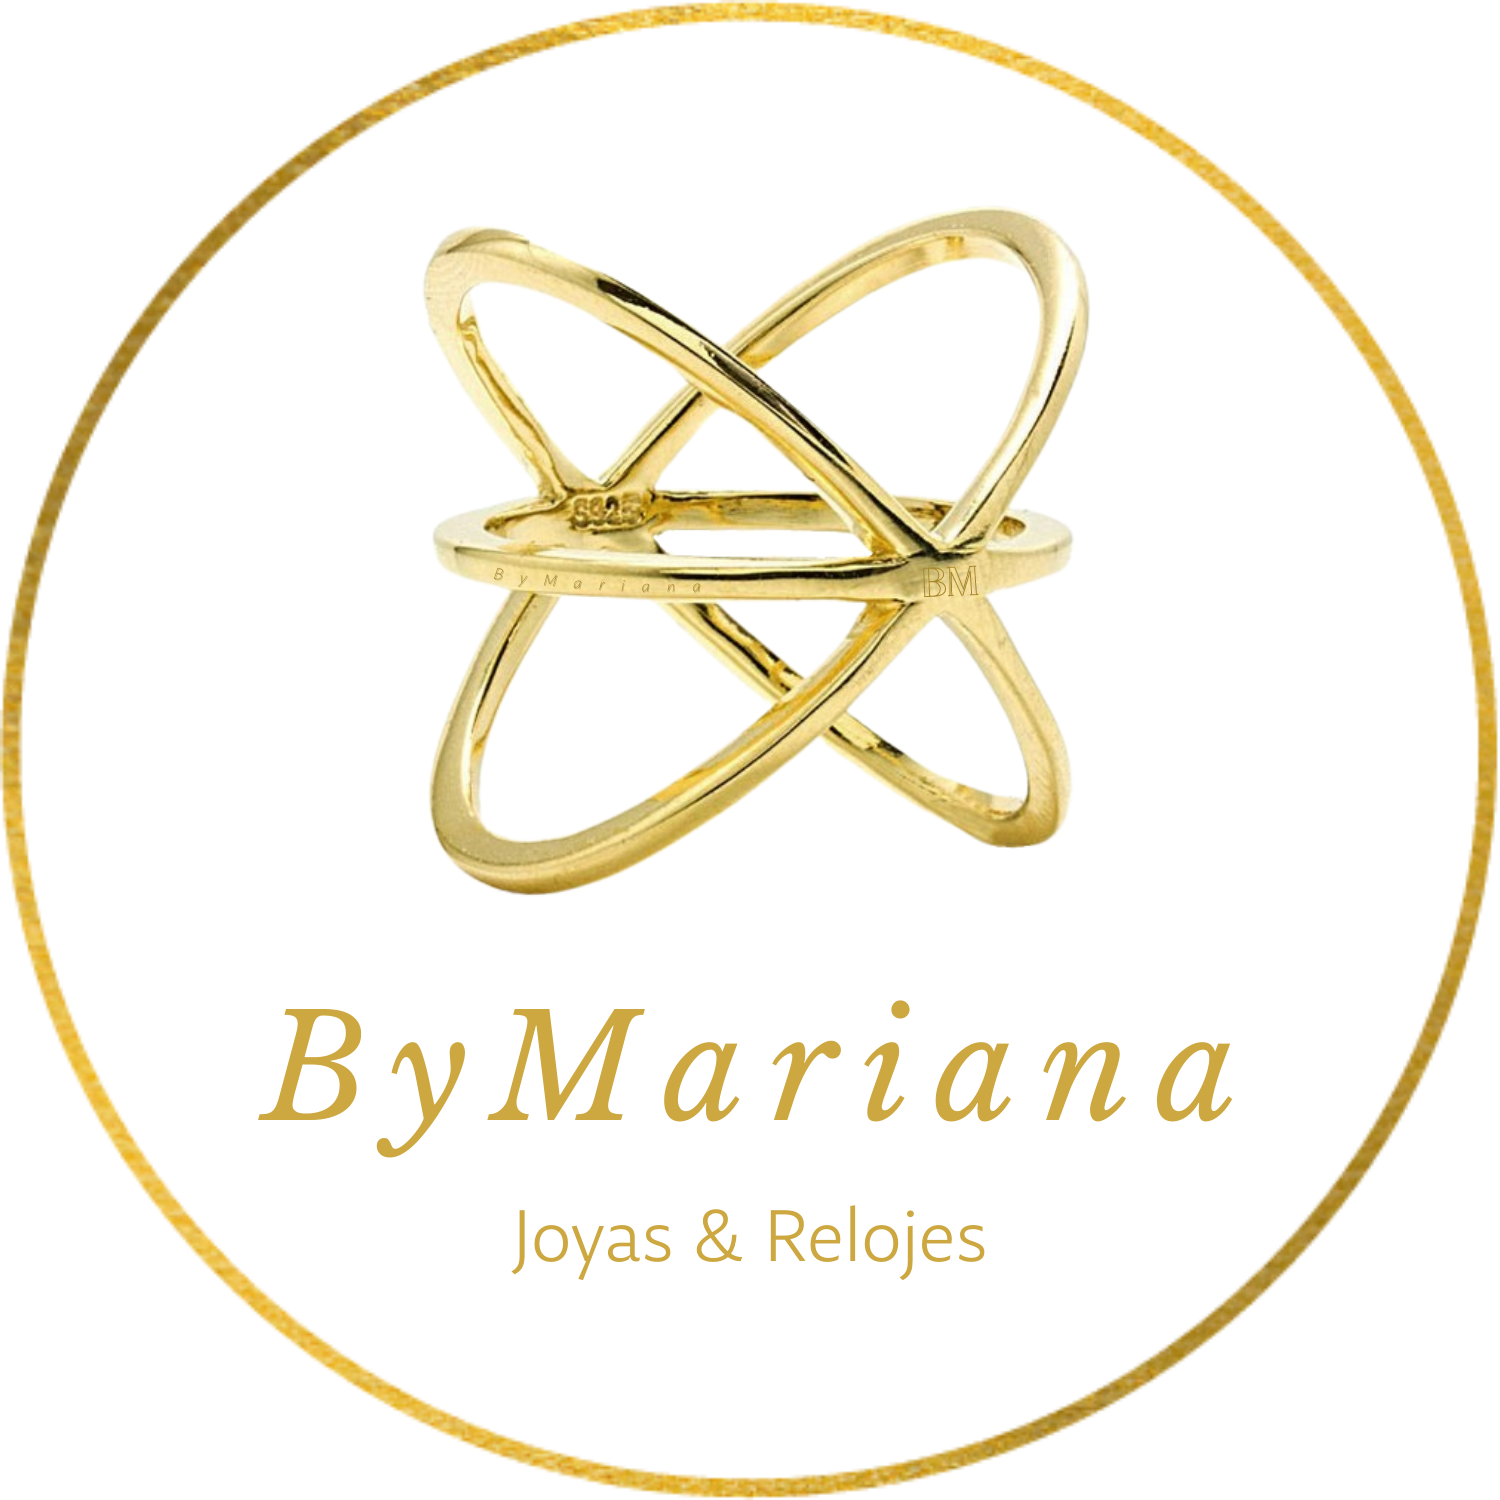 BYMARIANA_JOYAS